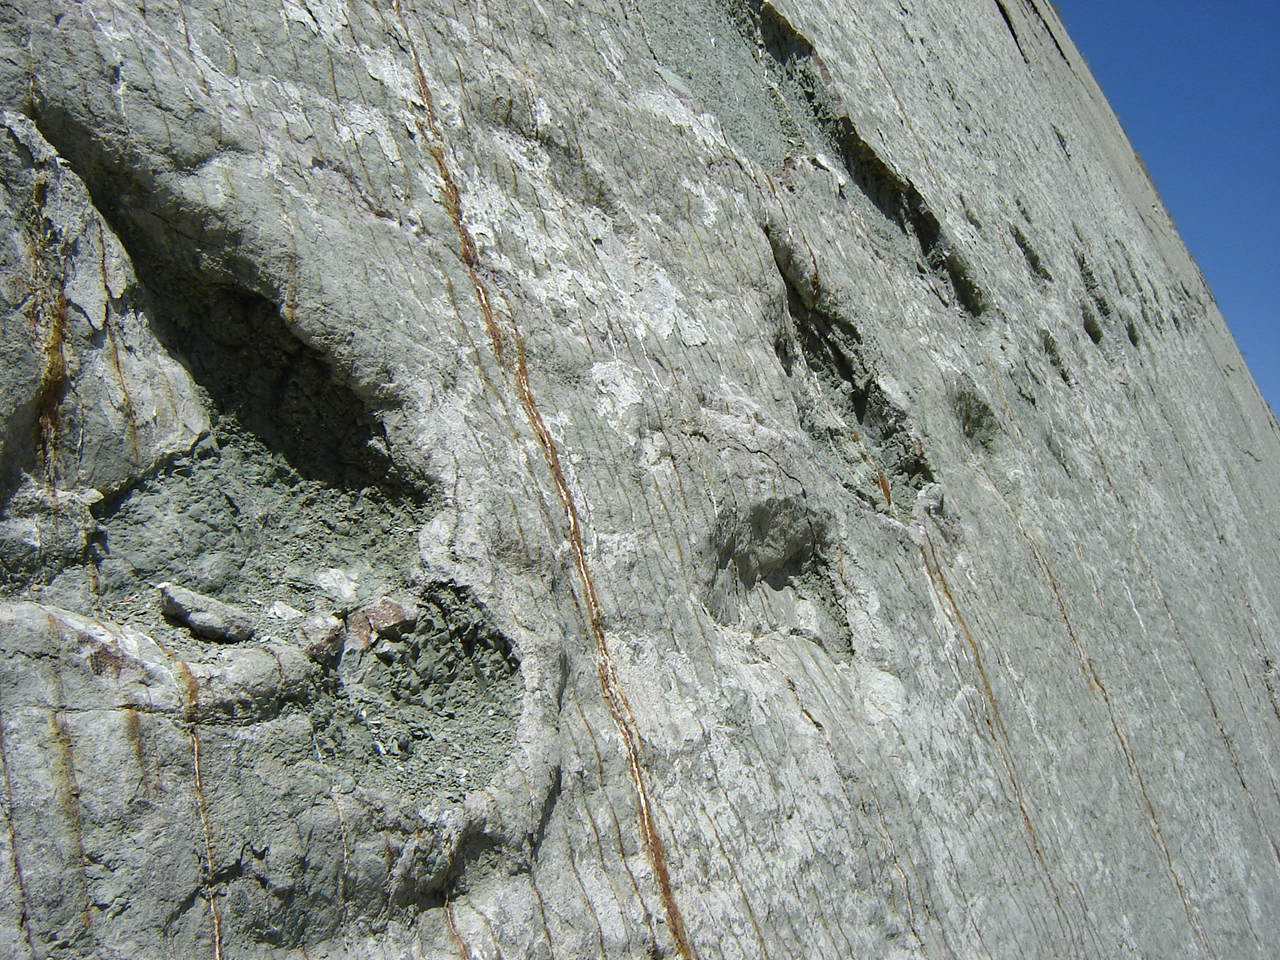 รอยเท้าบนผนัง: ไดโนเสาร์ปีนหน้าผาในโบลิเวียจริงหรือ? 3